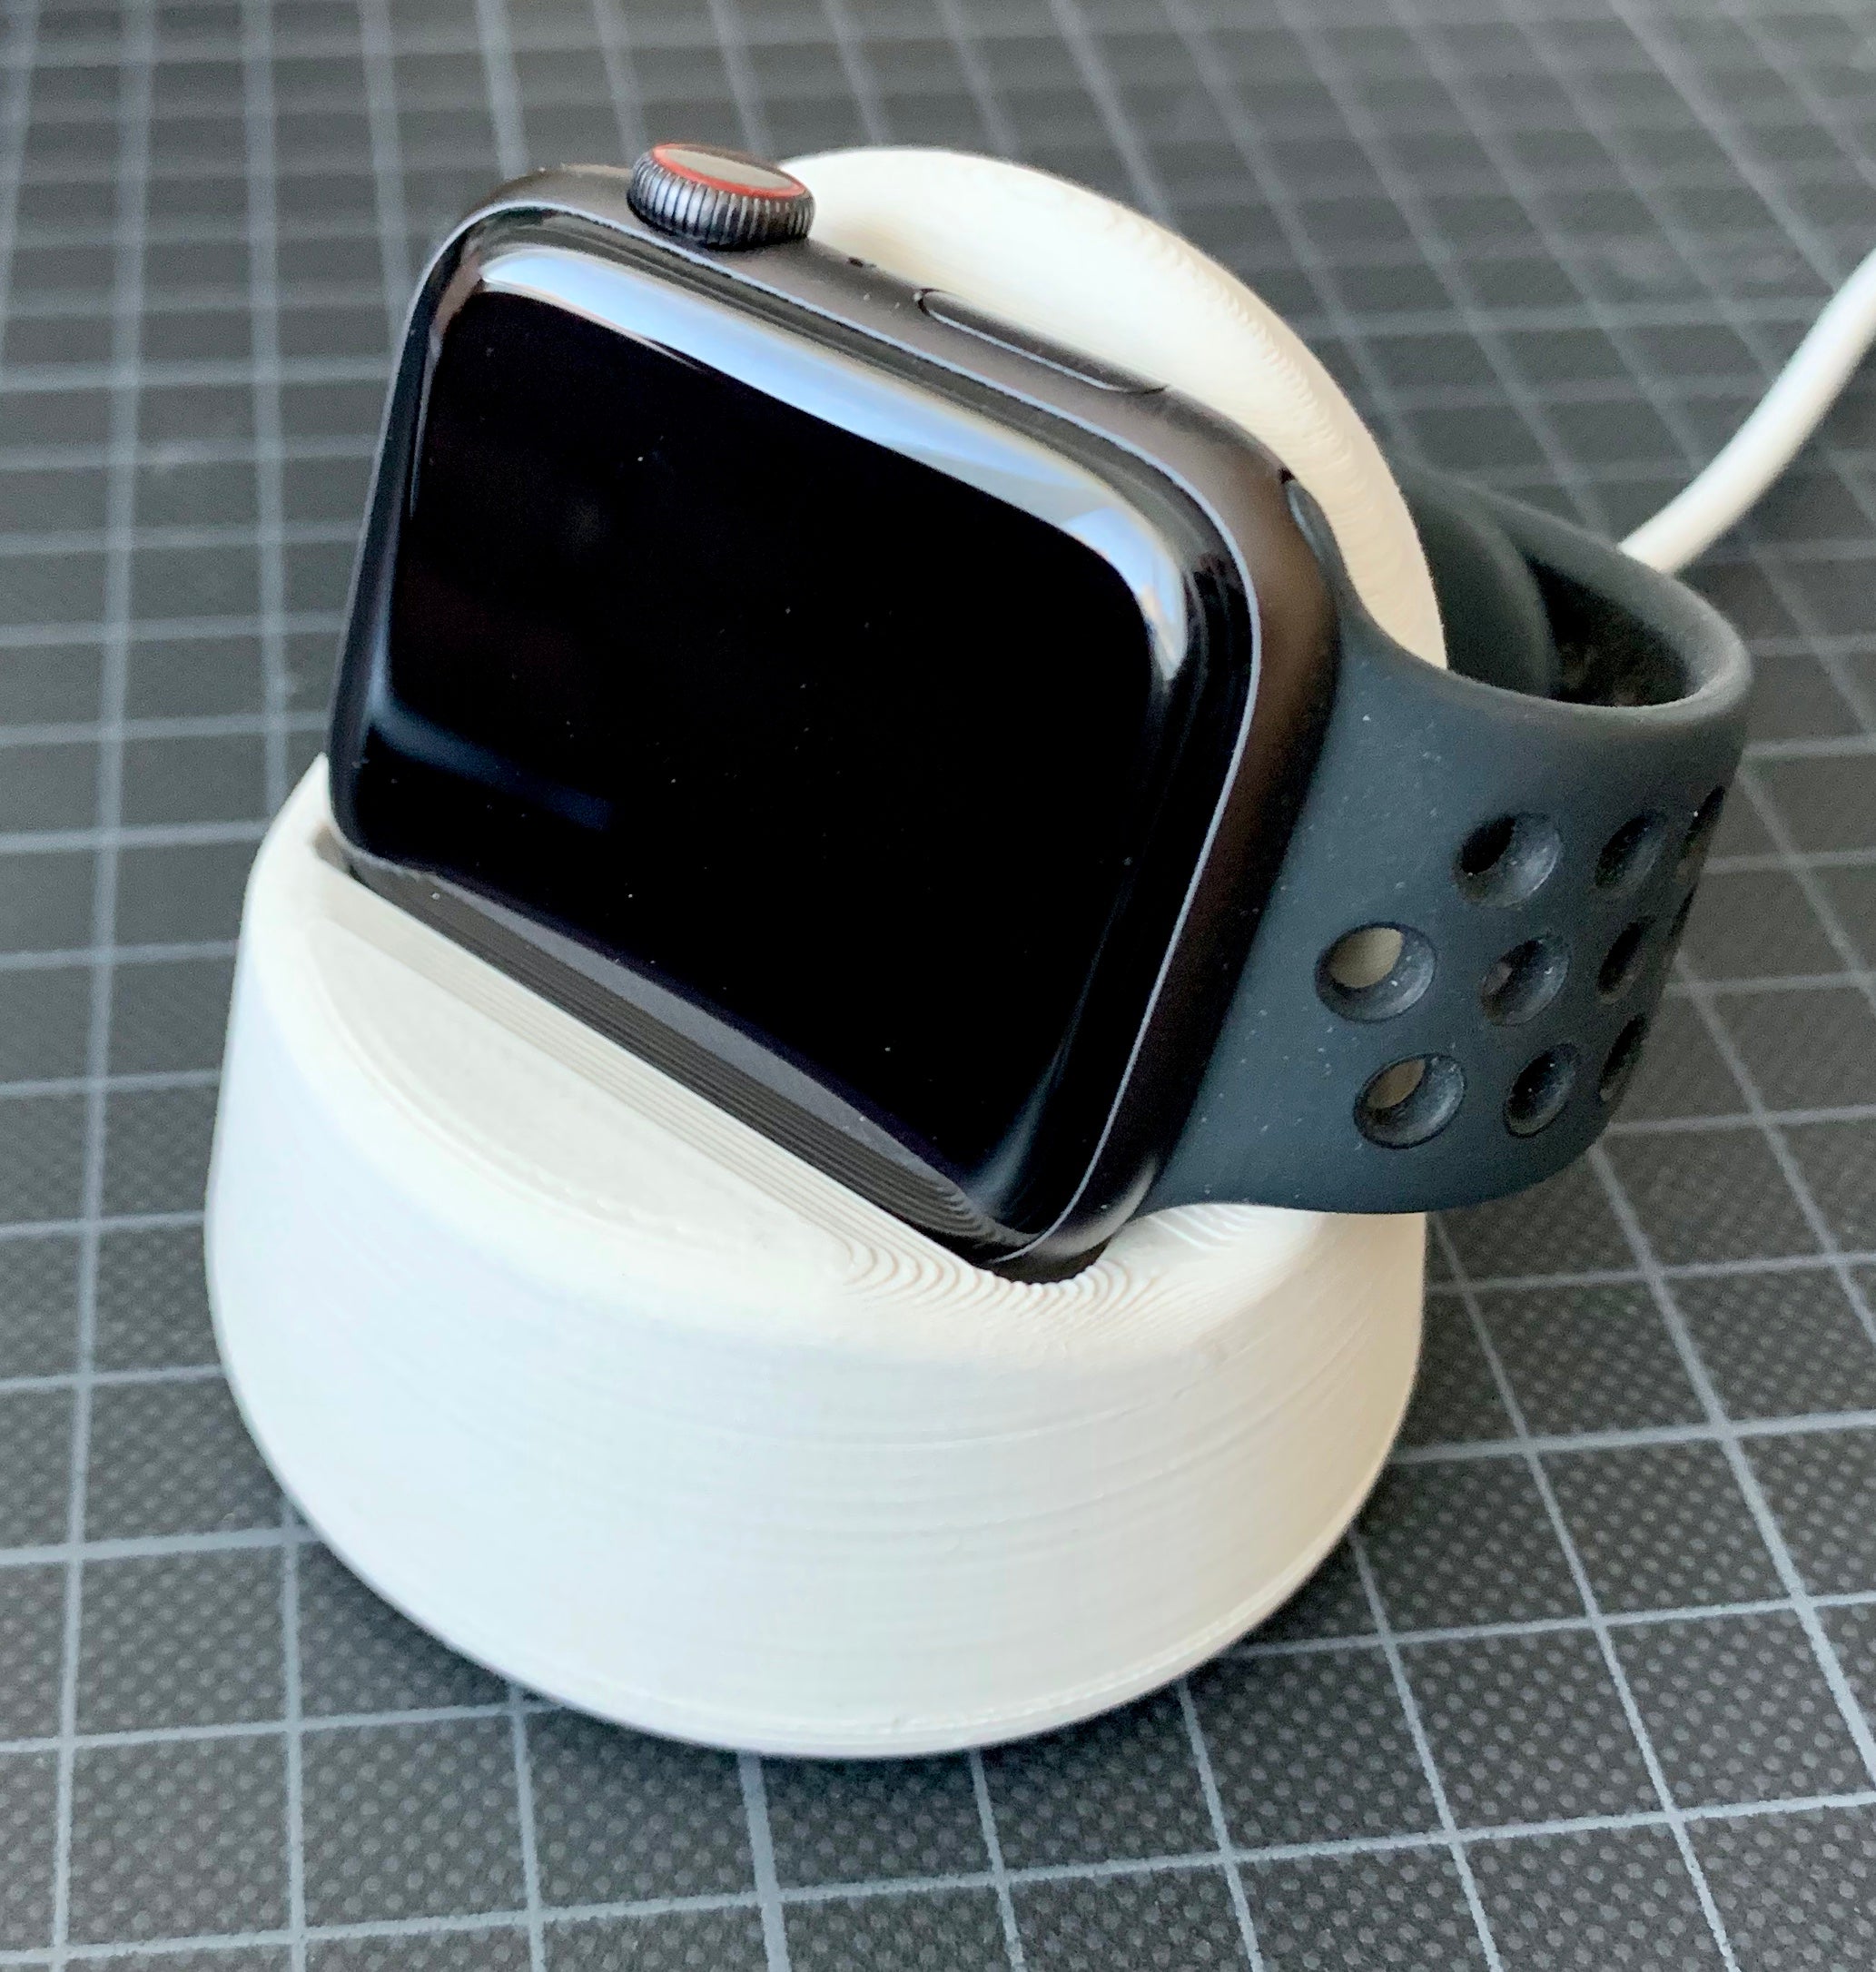 Apple Watch standaard met verborgen kabelmanagement en antislip onderkant